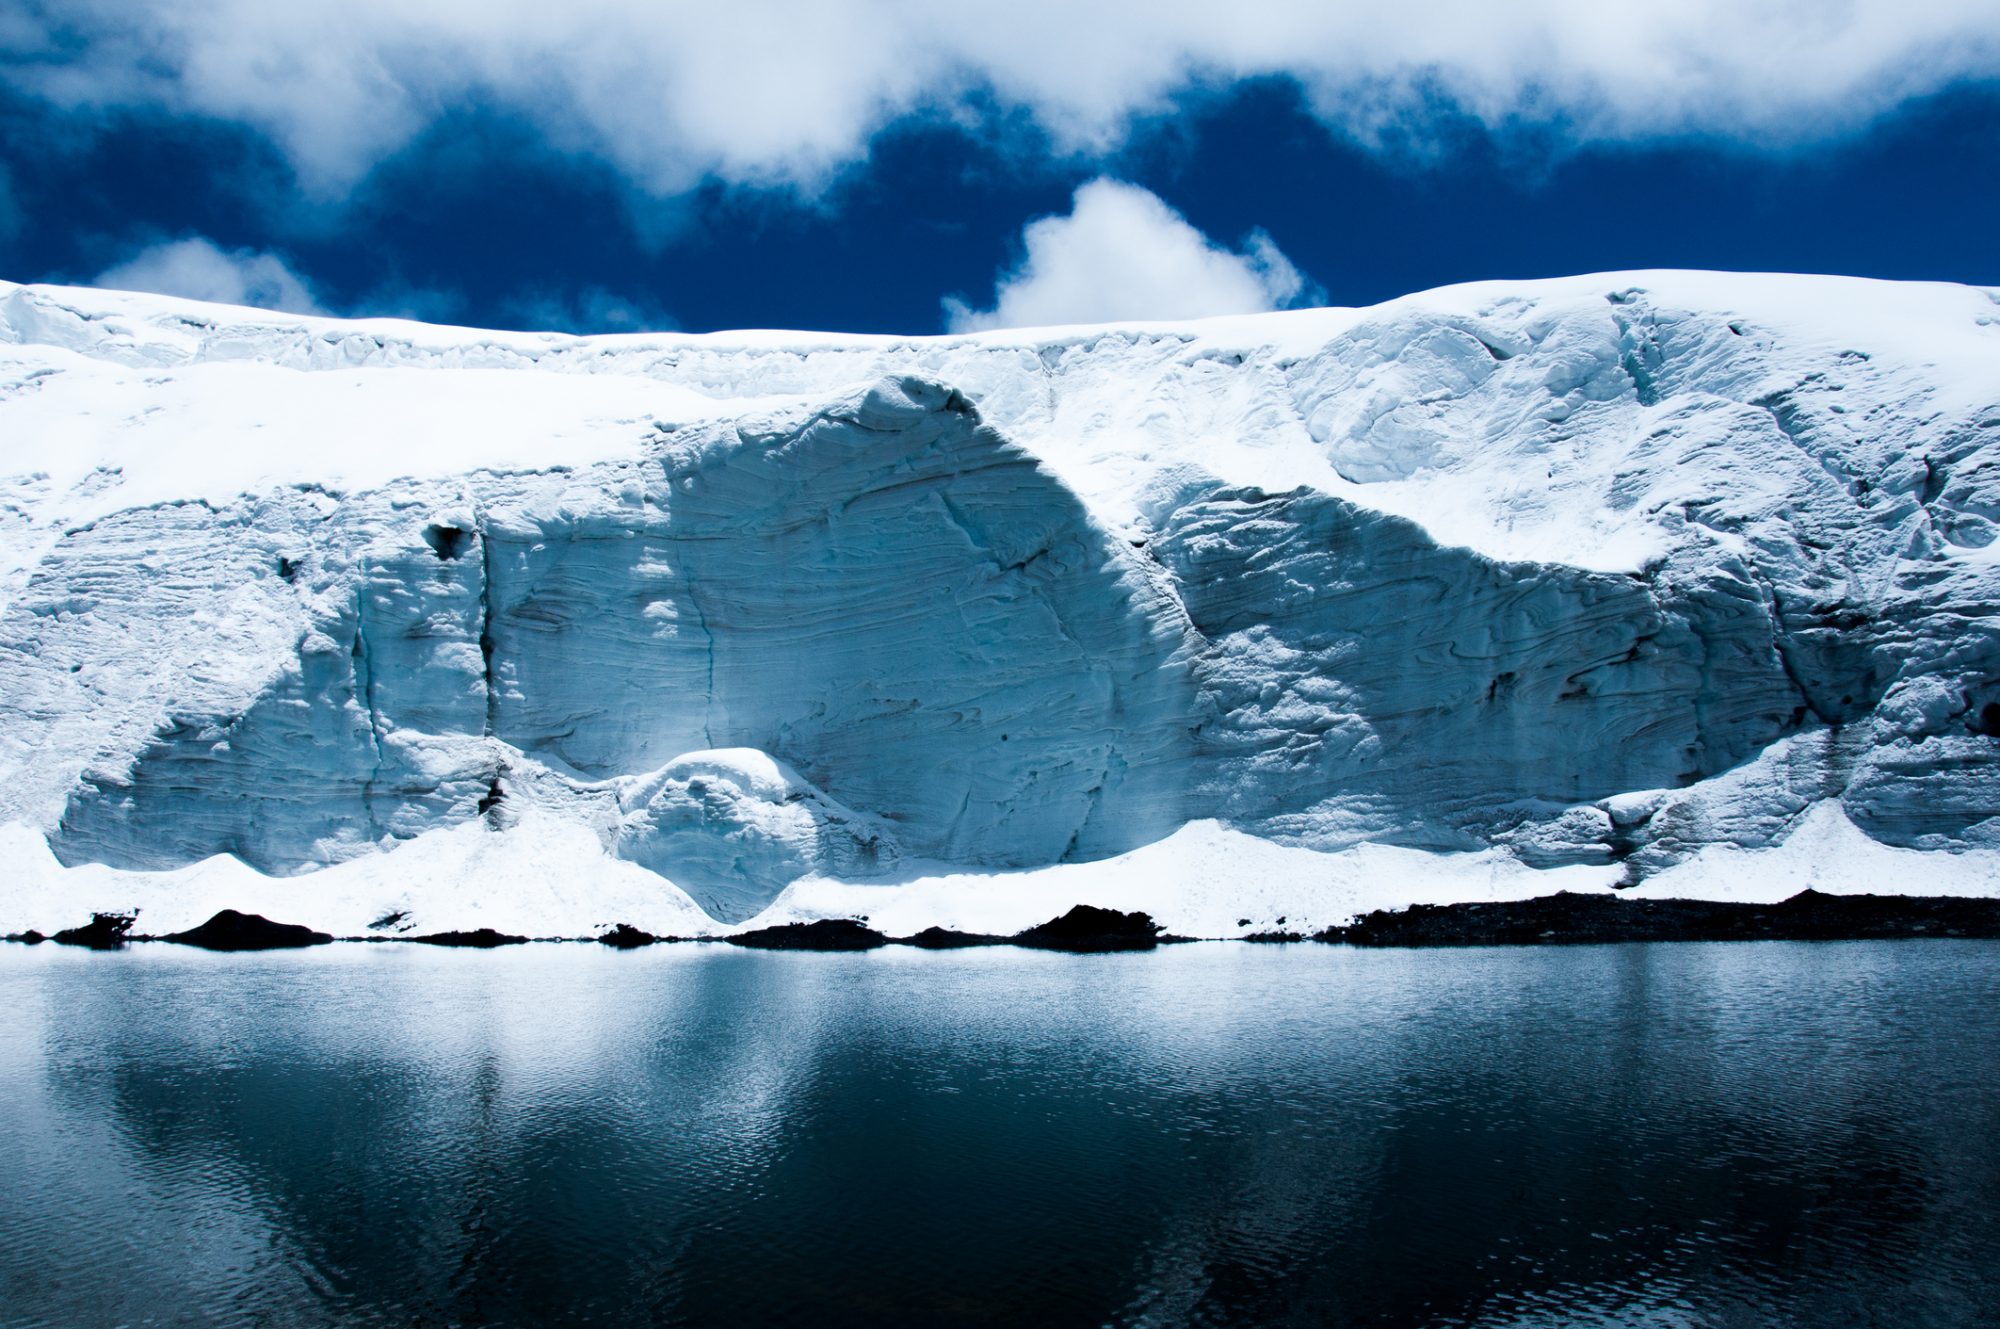 Misión de 50.000 millones de dólares para evitar que se derrita el “glaciar del fin del mundo” de la Antártida